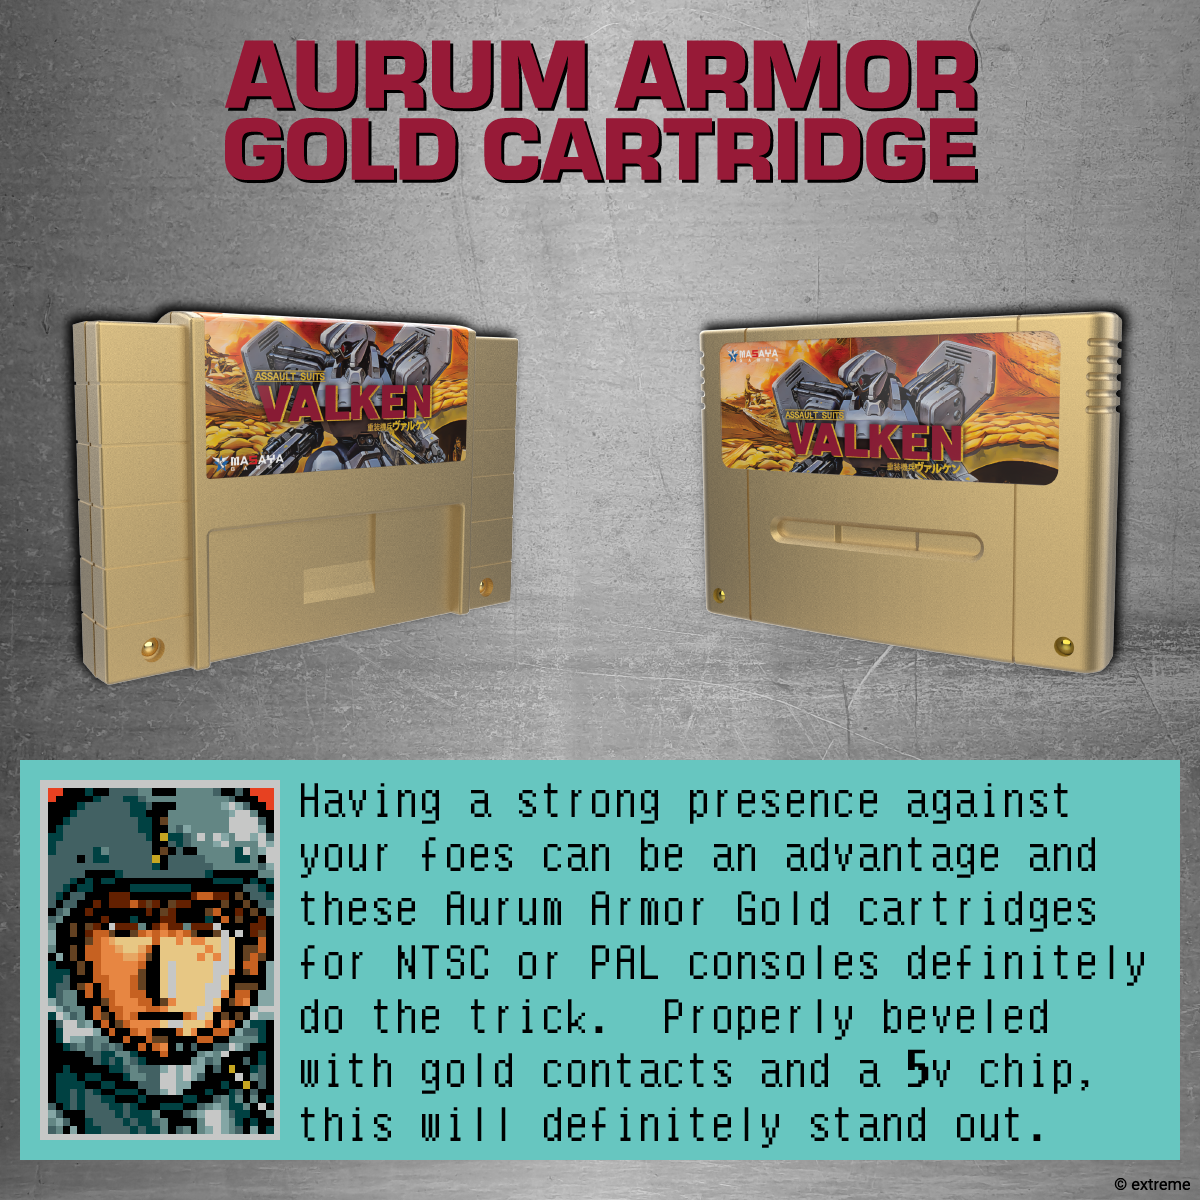 ASV Item - Aurum Armor Gold Cartridge